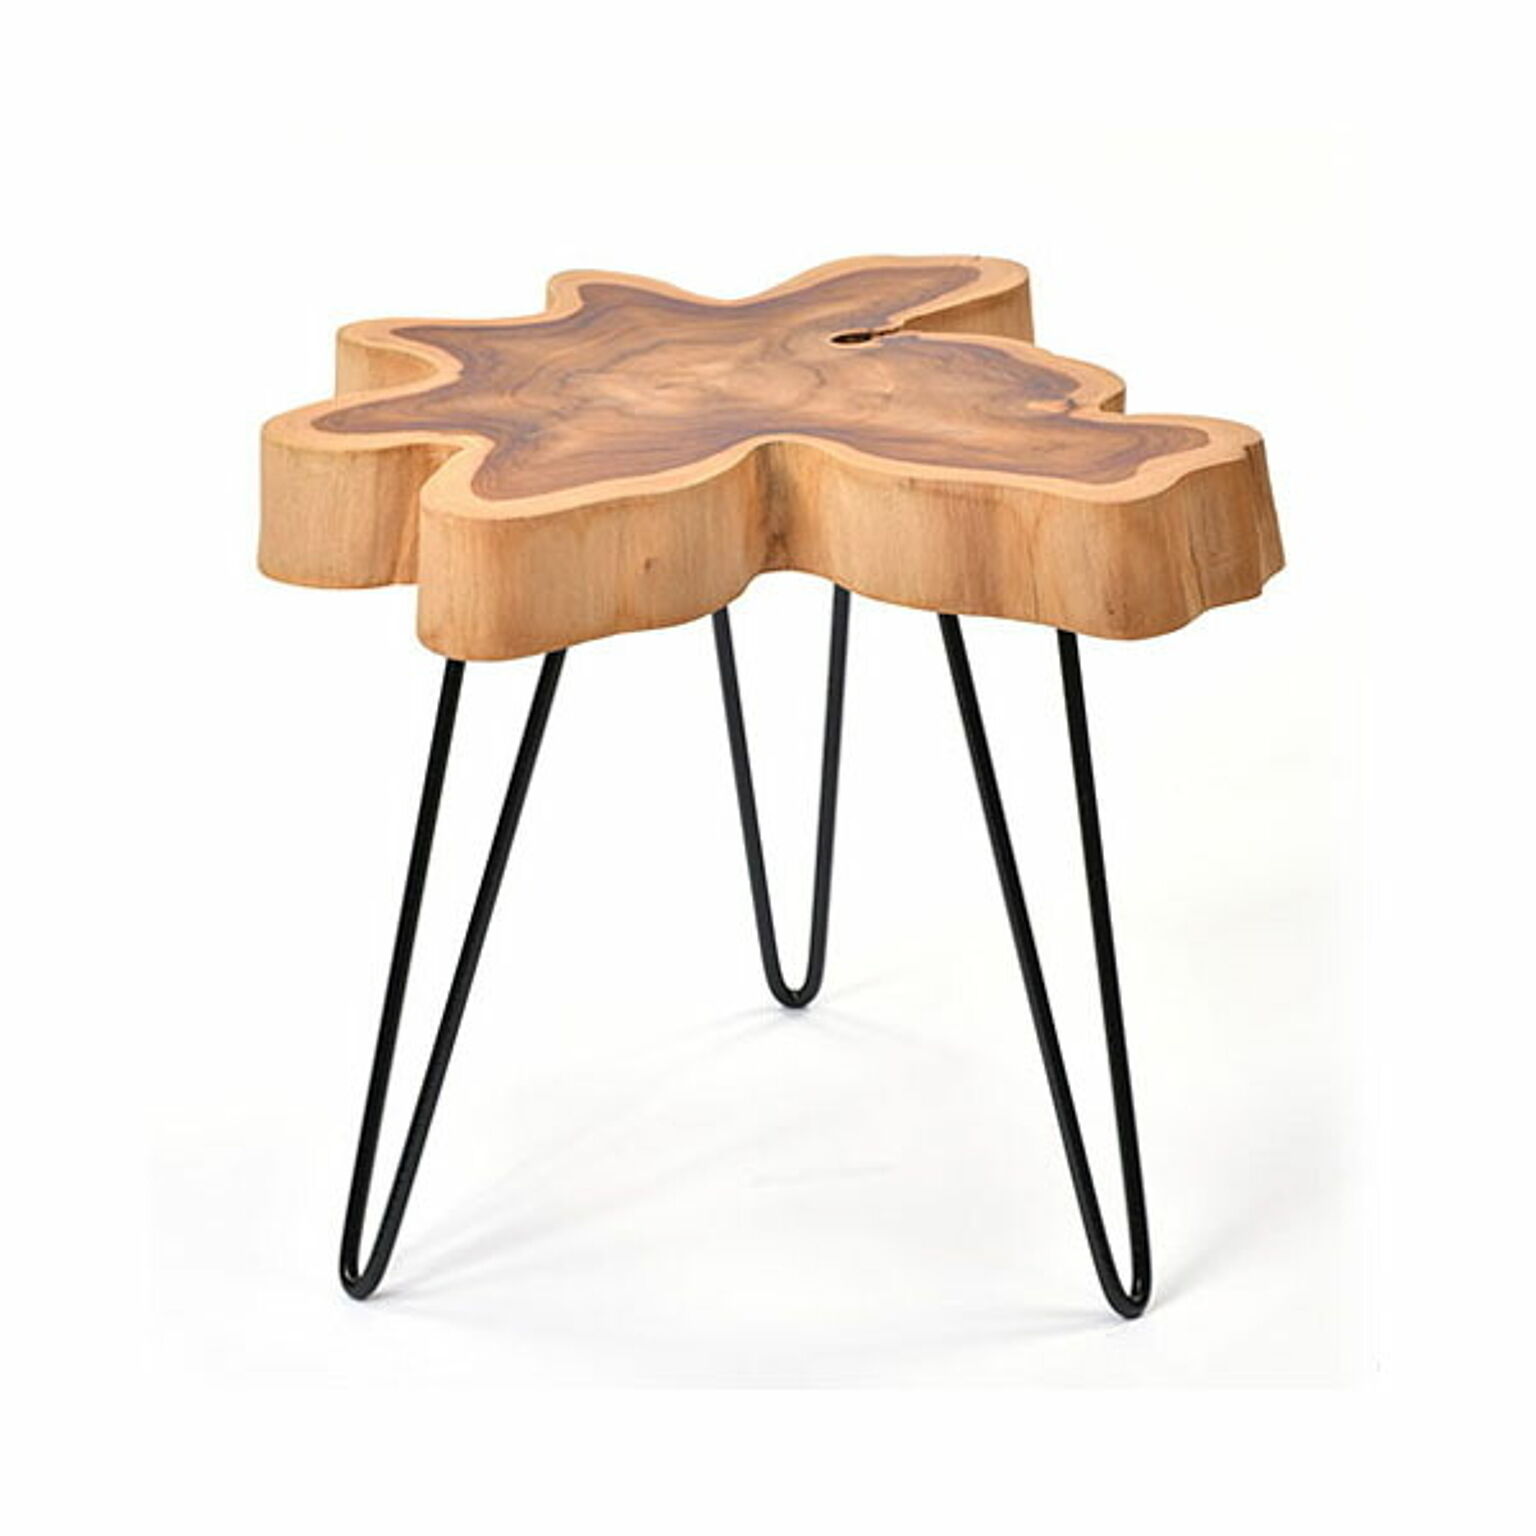 サイドテーブル 幅45cm 高さ45cm AZT005 組立式 チーク無垢材 アイアンフレーム 天然木 キムラ